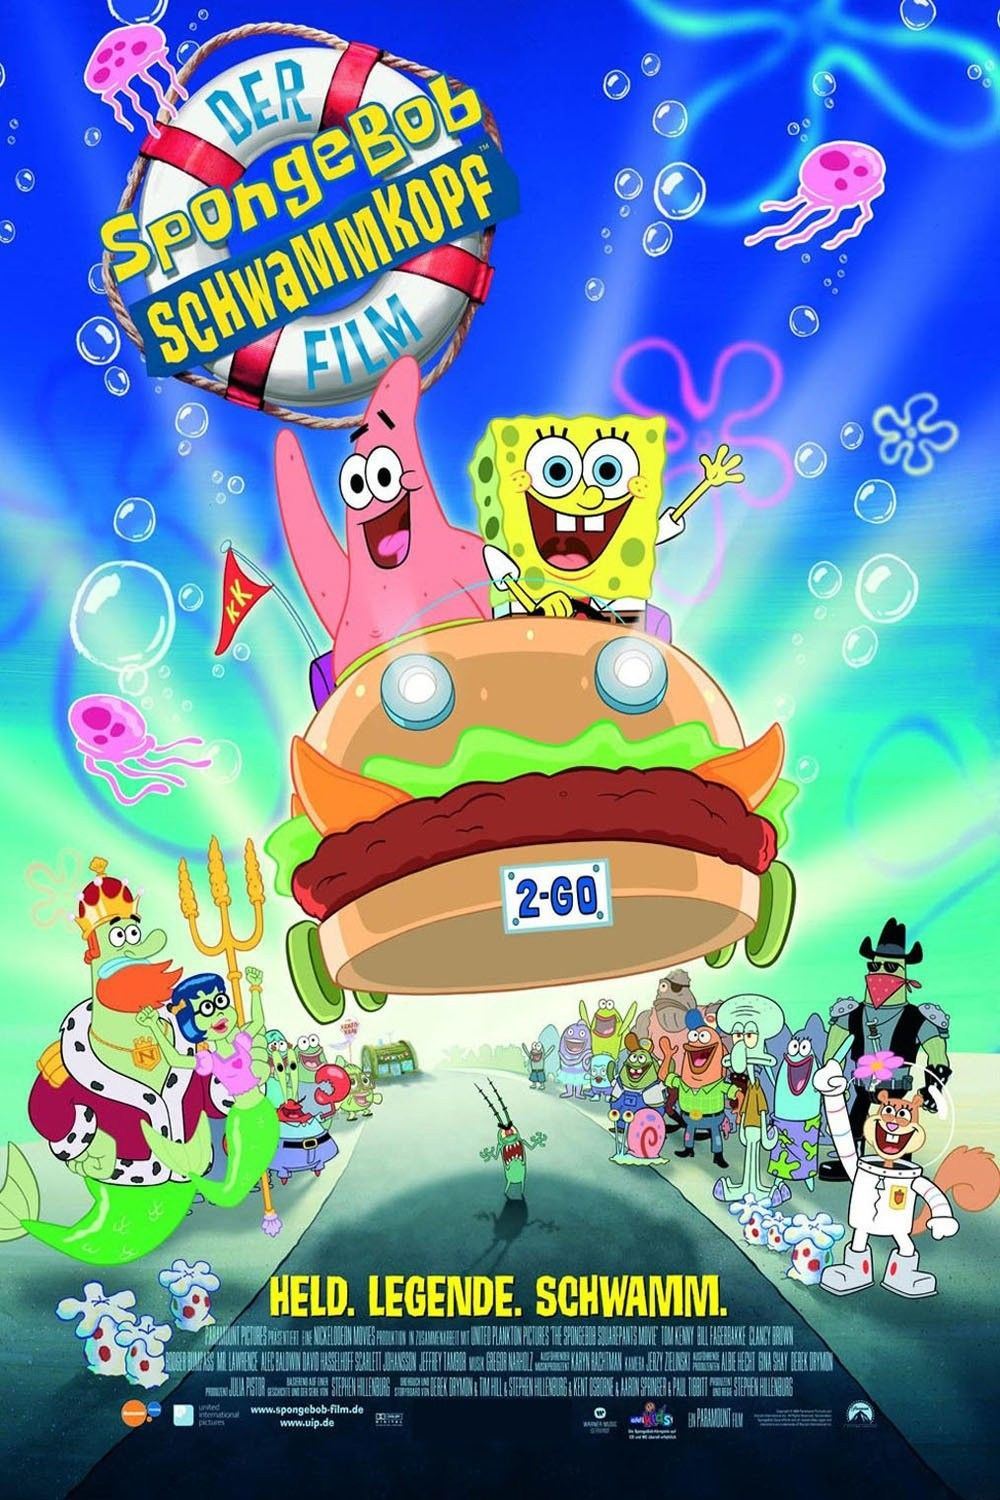 Der Spongebob Schwammkopf Film (2004) - Filme Kostenlos bestimmt für Spongebob Schwammkopf Spiele Kostenlos